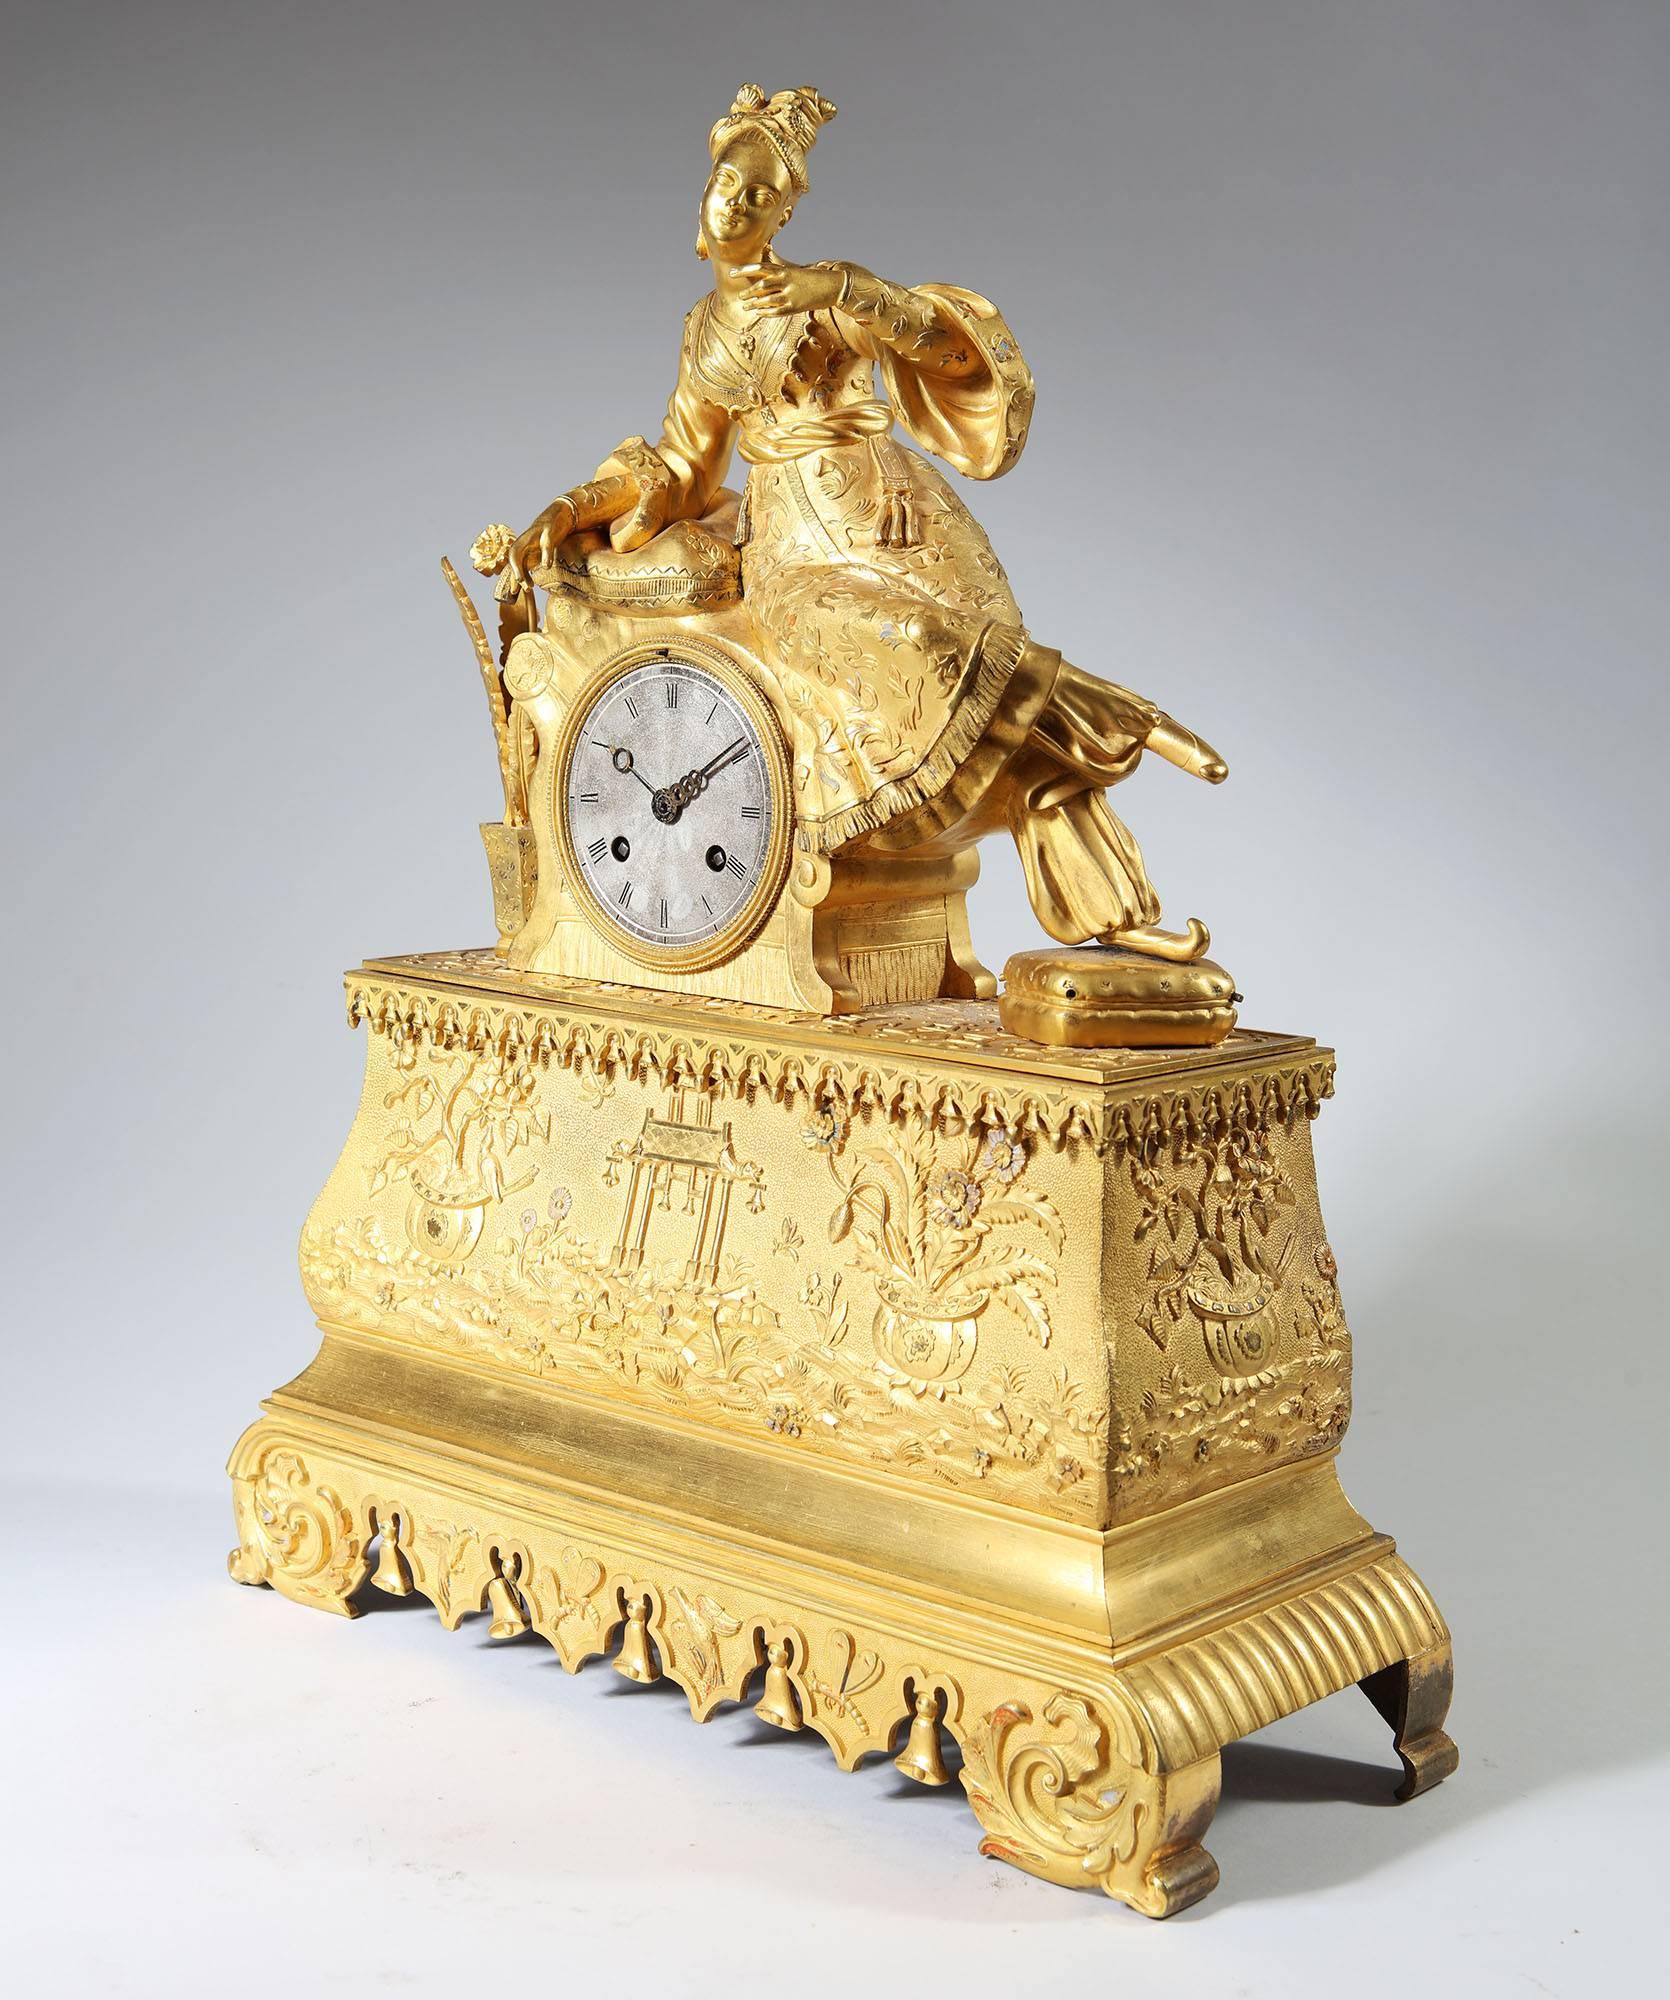 Pendule en bronze doré du XIXe siècle représentant une dame assise en robe ottomane reposant sur des coussins, le bras levé tenant peut-être à l'origine un oiseau ou un objet similaire. Surmontée d'une base ogivale avec un riche ornement de paniers